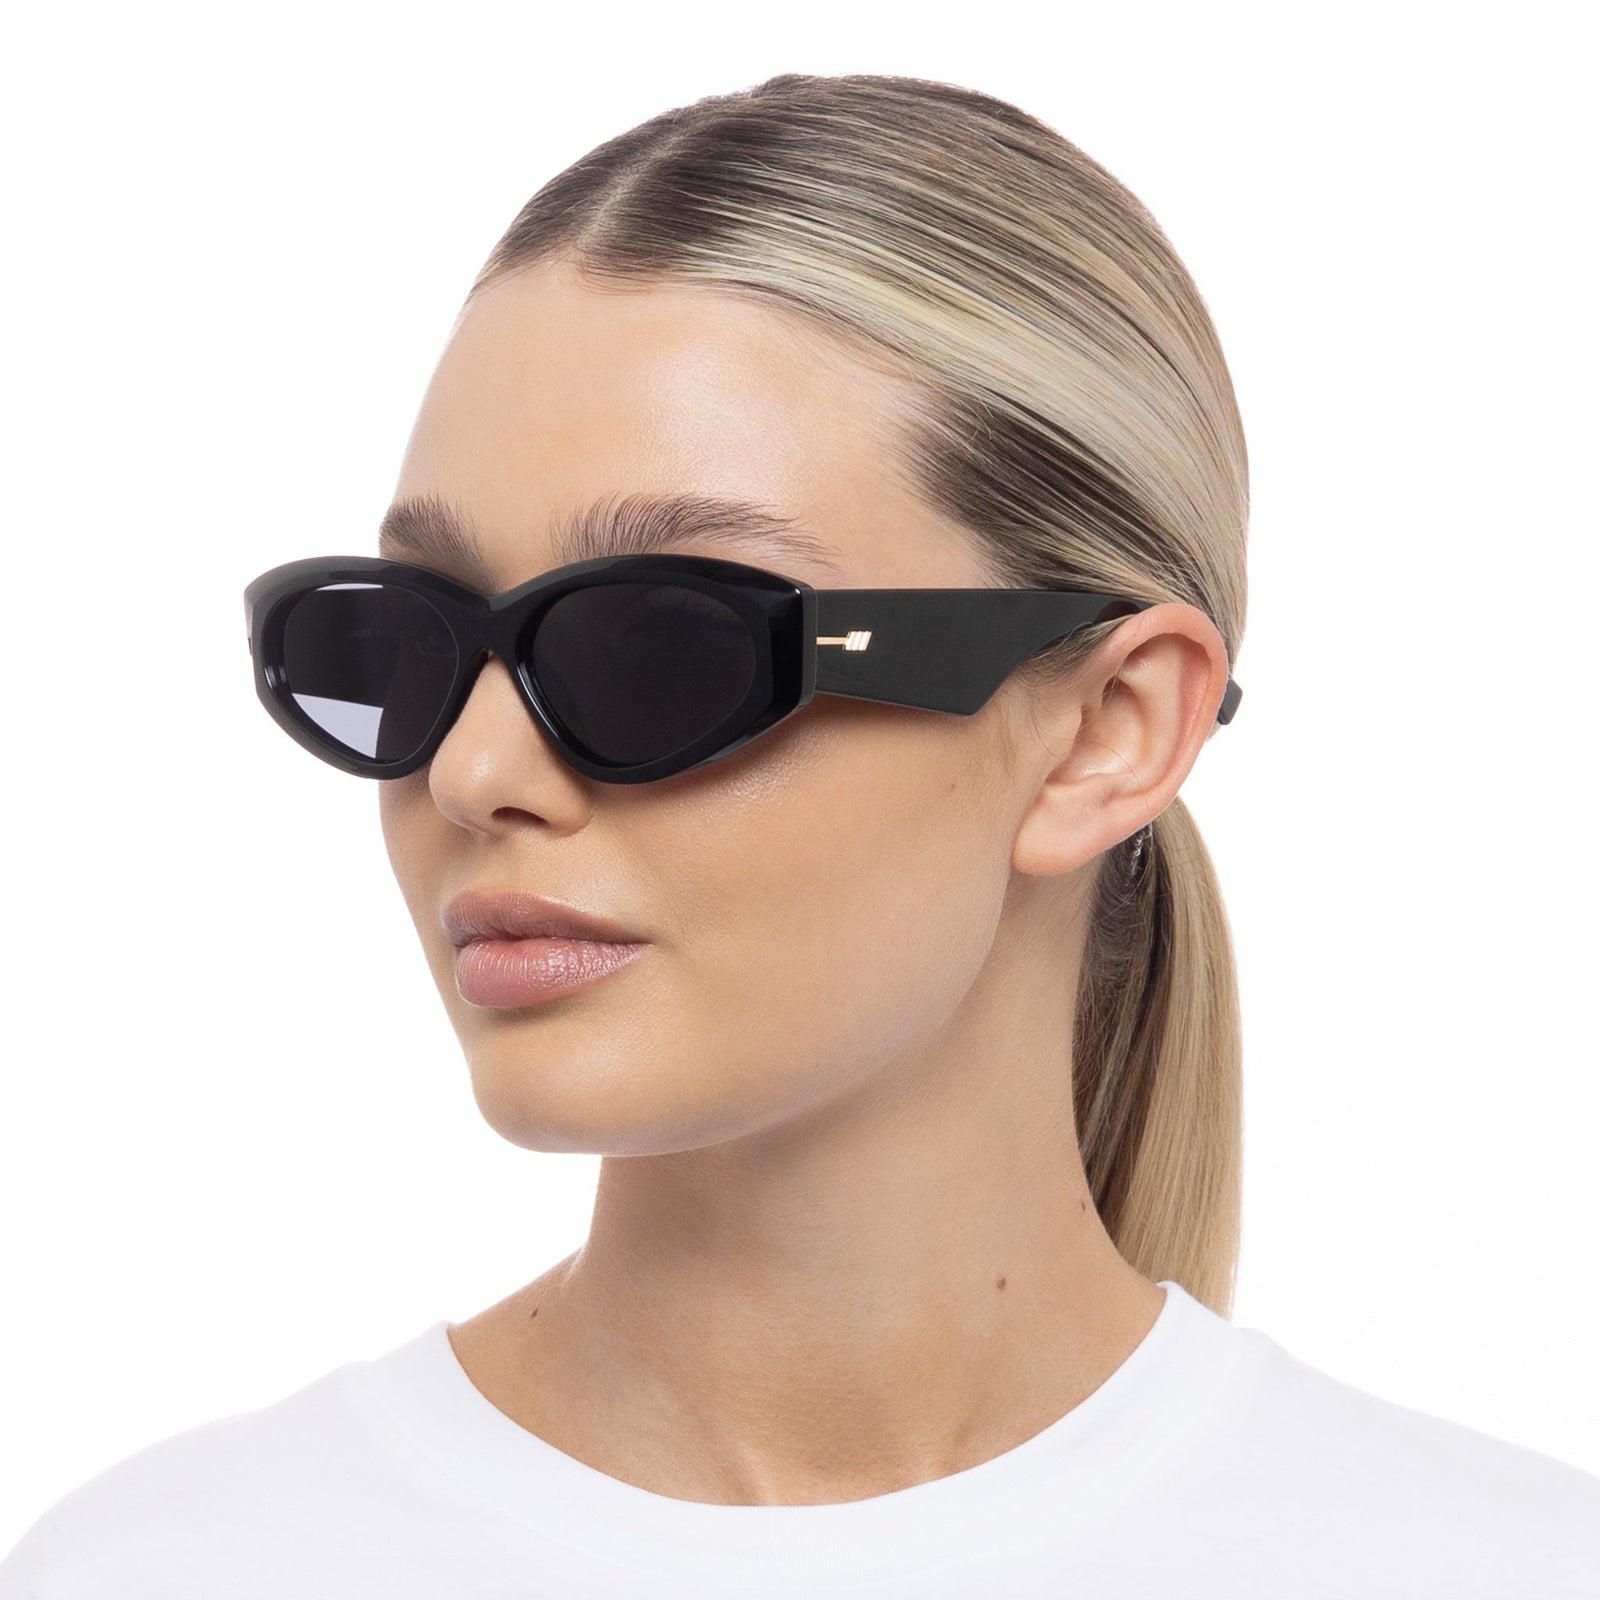 Black Wrap Le Under Uni-Sex Wraps Specs Sunglasses |